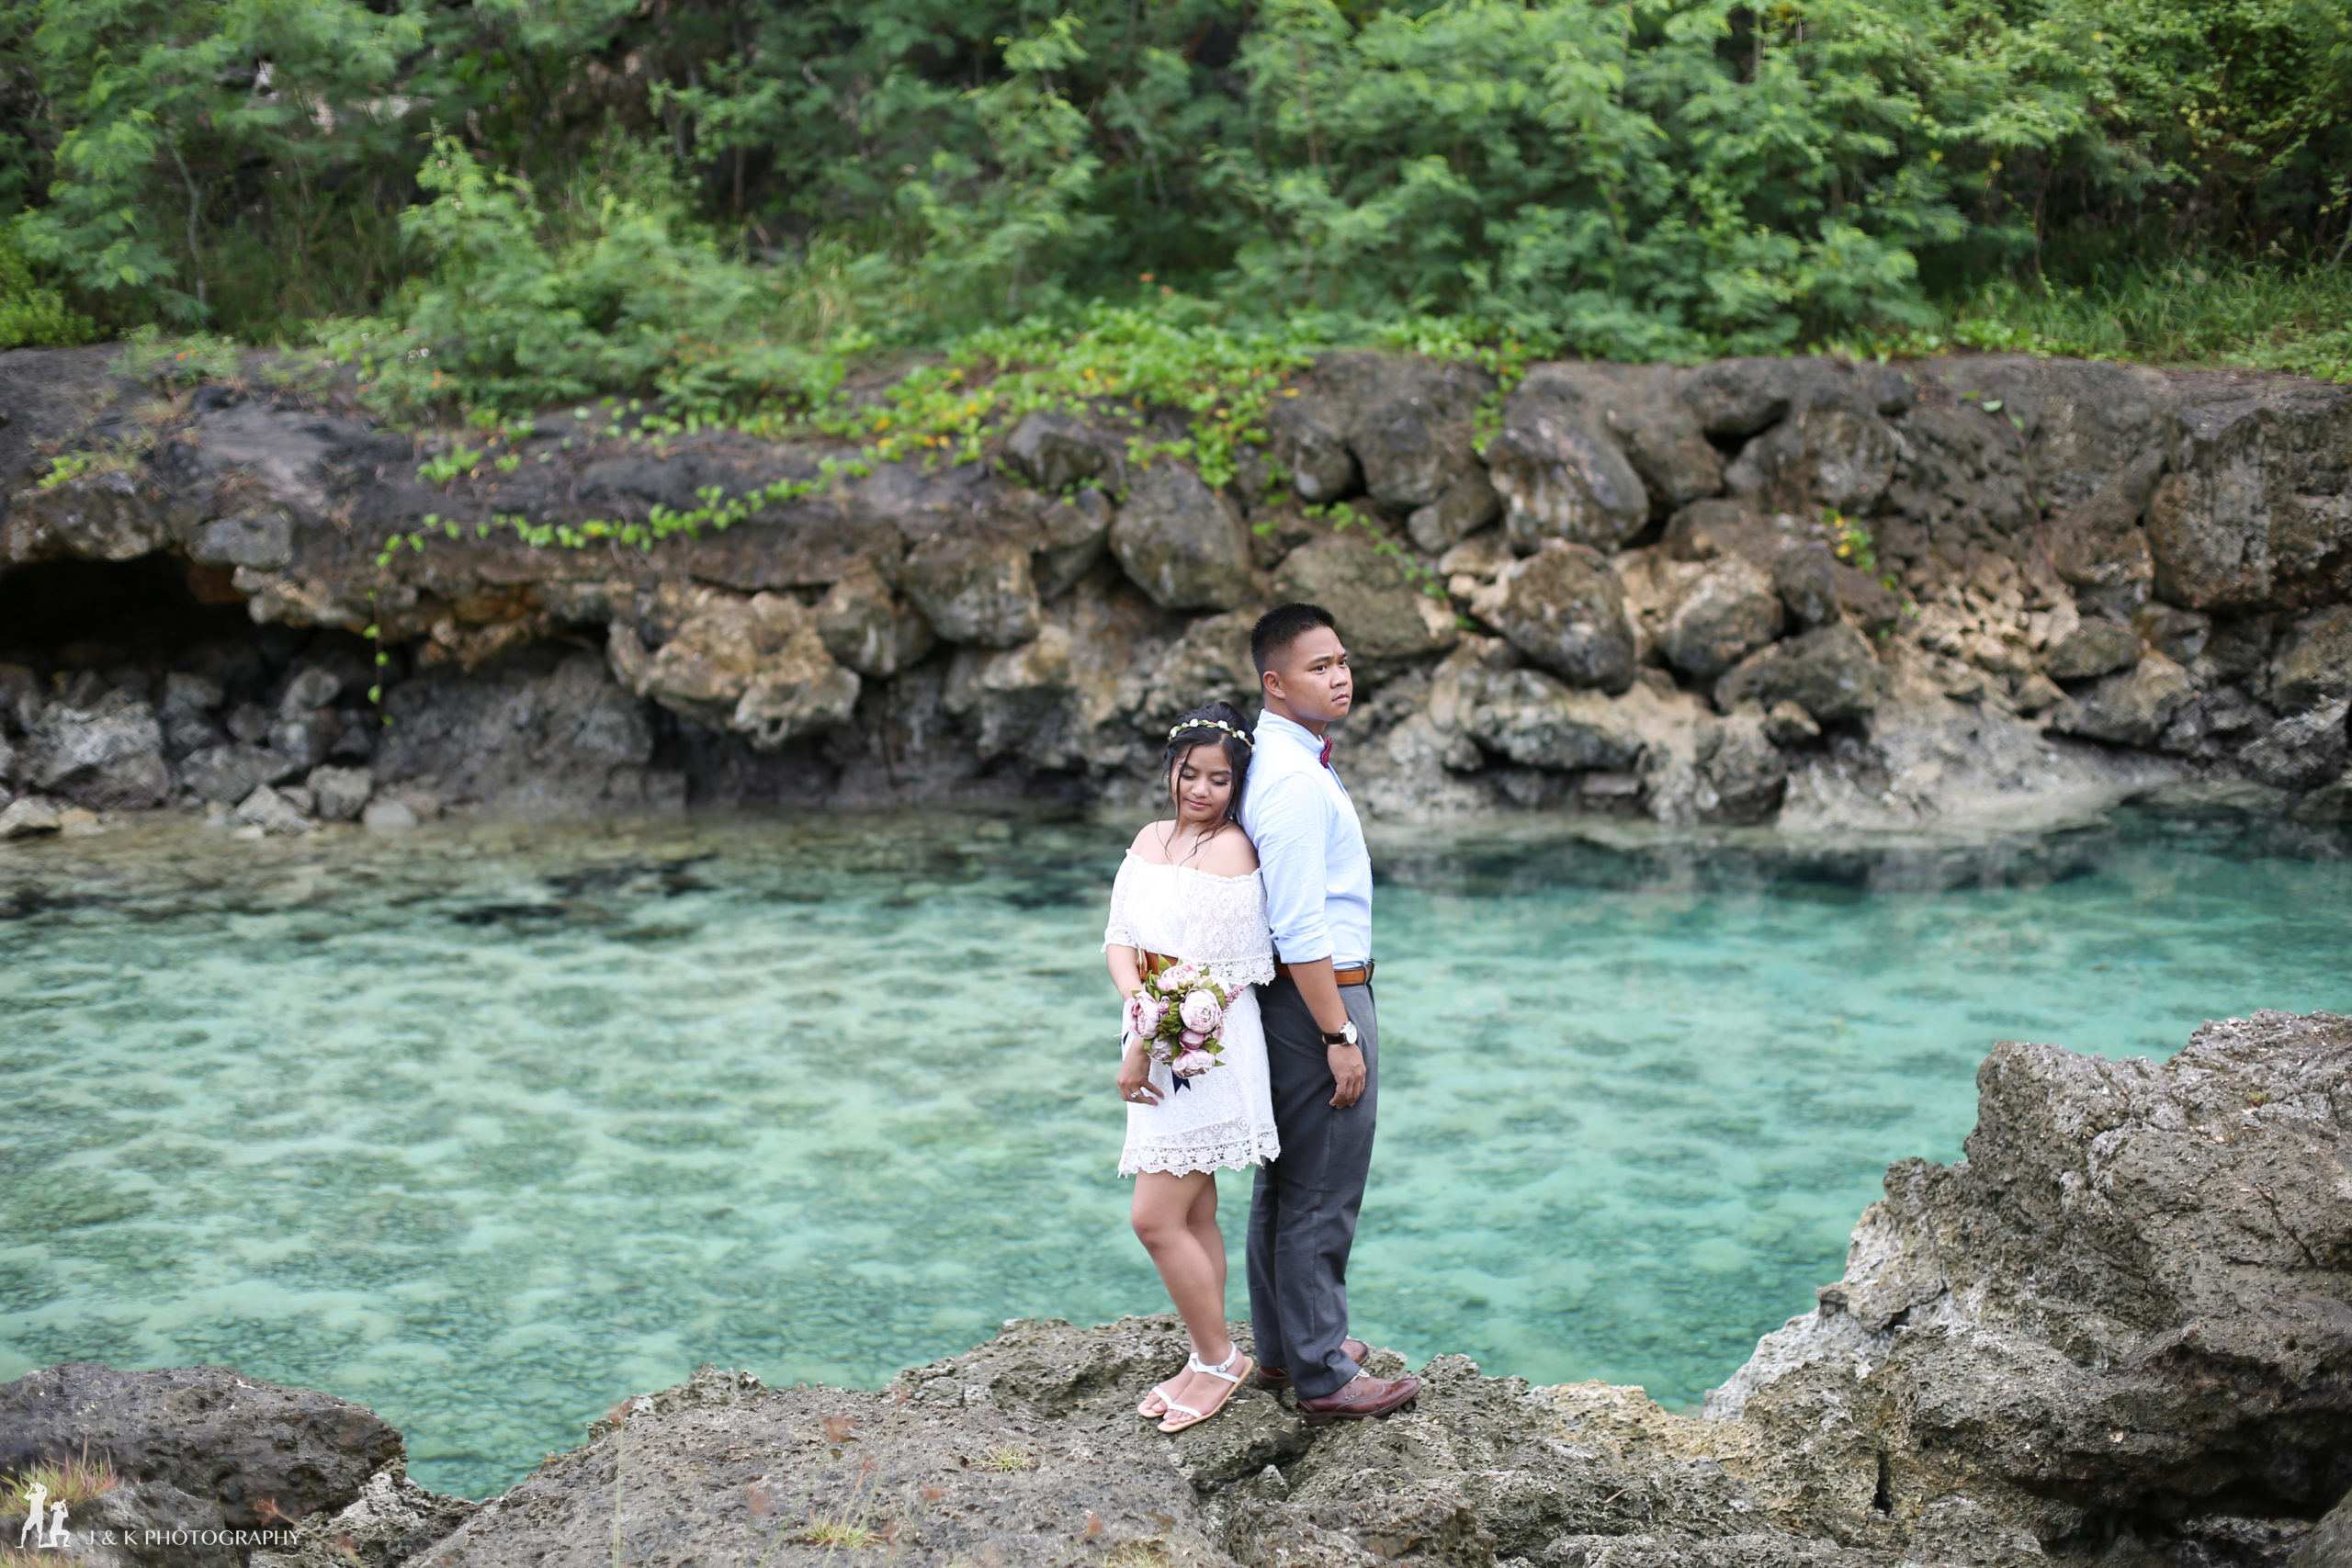 グアムで前撮り- J&K PHOTOGRAPHY -Wedding photographer James and Kina, Guam and Japanグアムで写真撮影　前撮りならジェイムス＆キナ